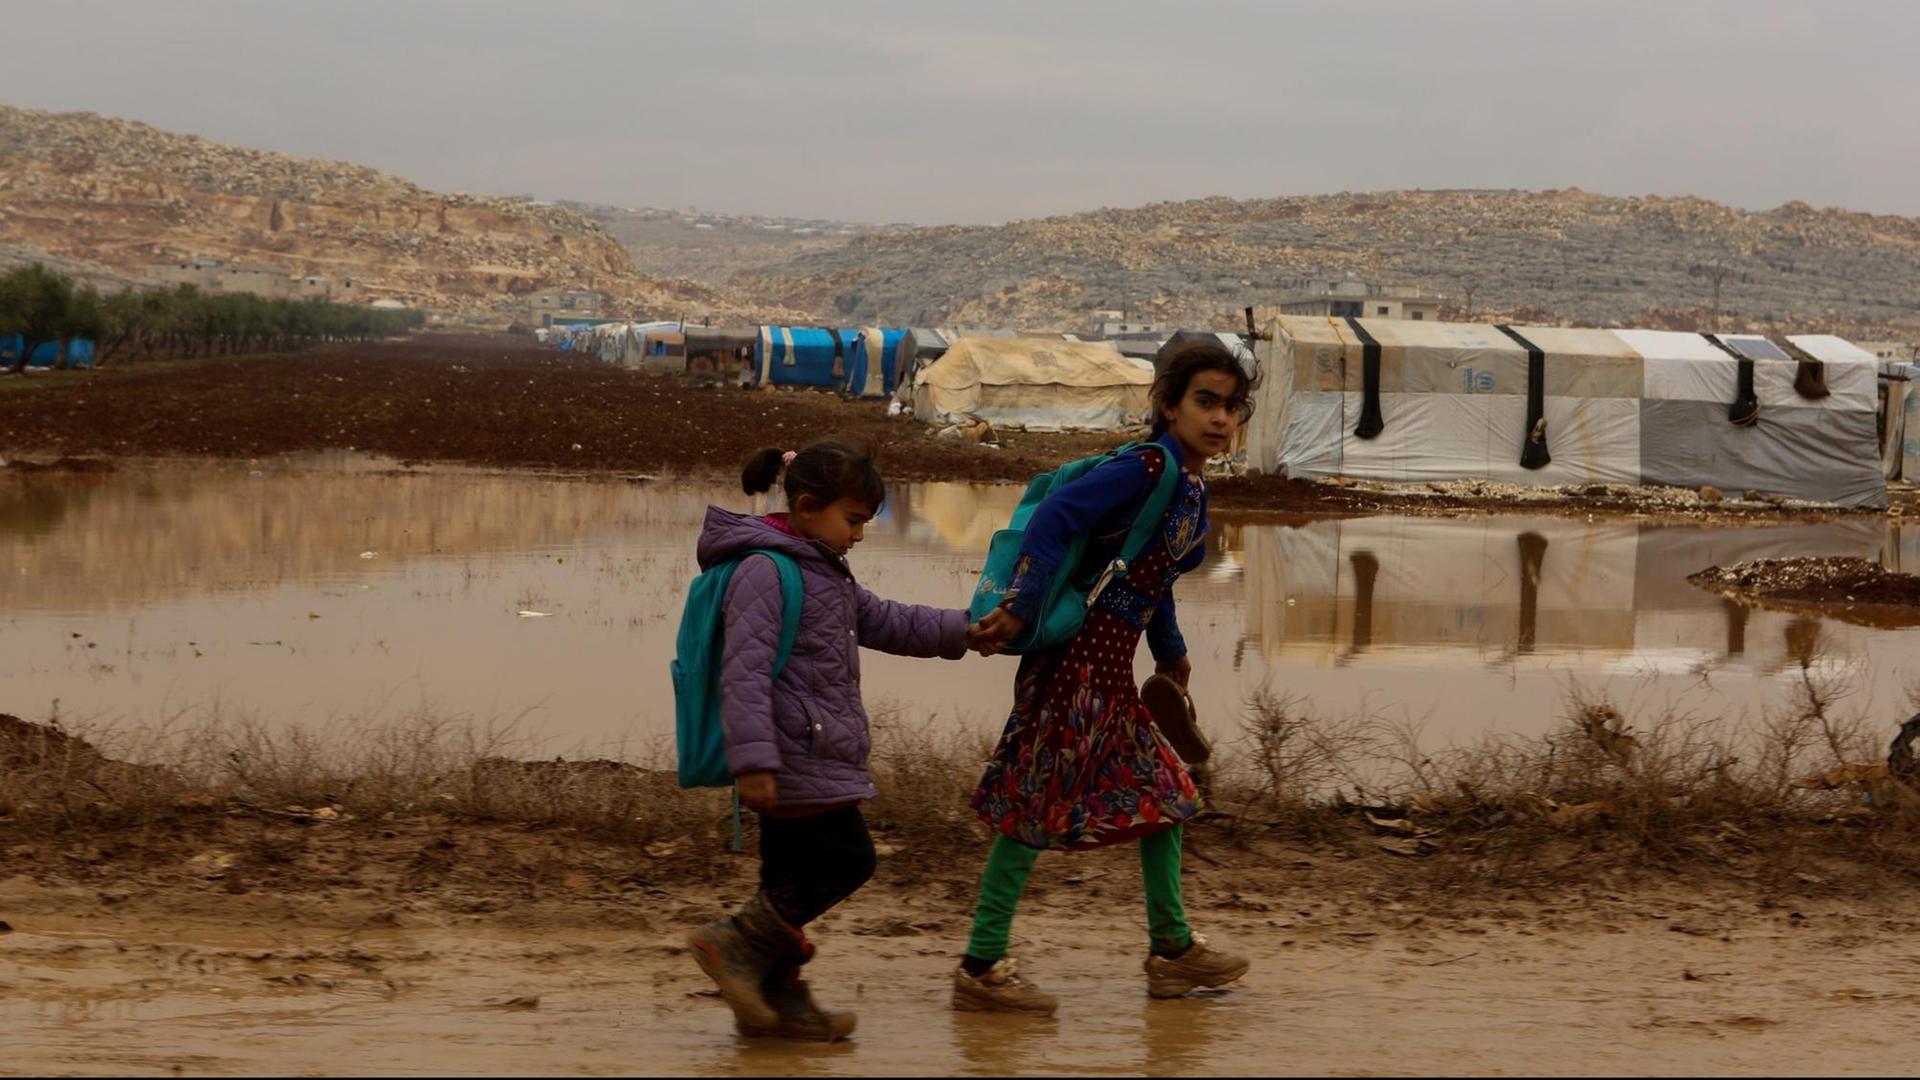 Zwei Kinder laufen durch Matsch. Im Hintergrund sind weiße Flüchtlingszelte zu erkennen.